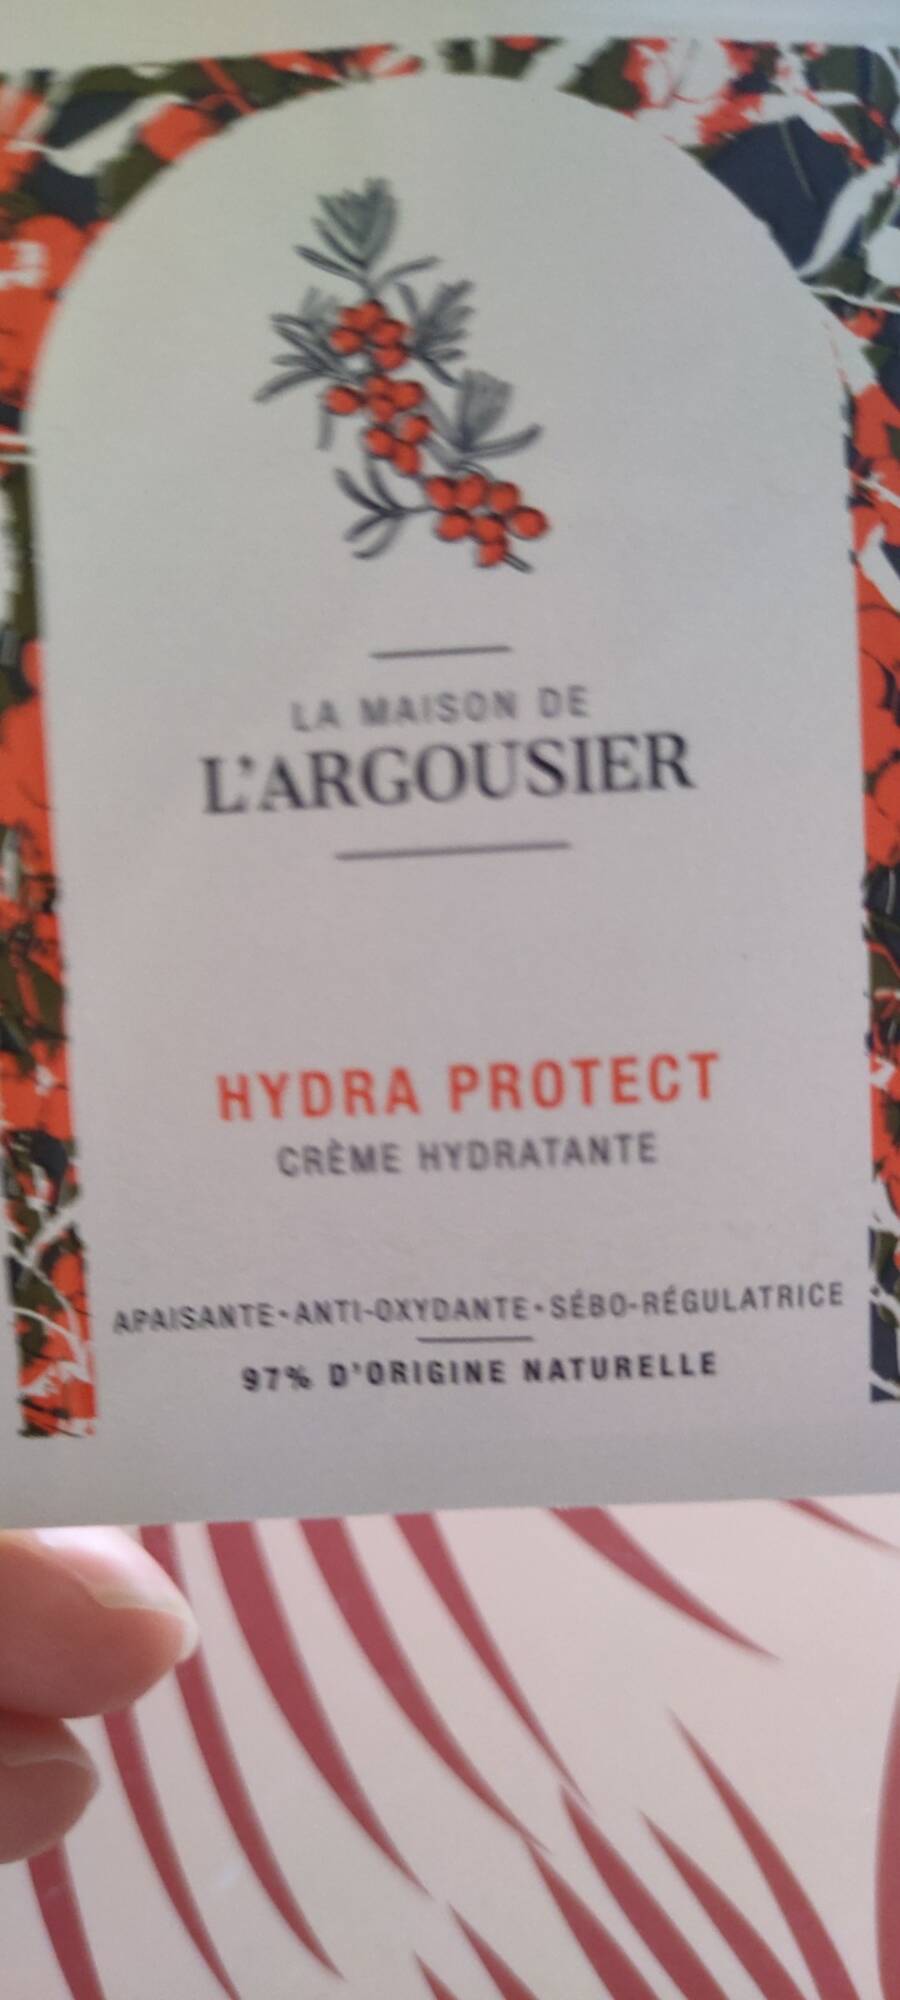 LA MAISON DE L'ARGOUSIER - Hydra protect - Crème hydratante